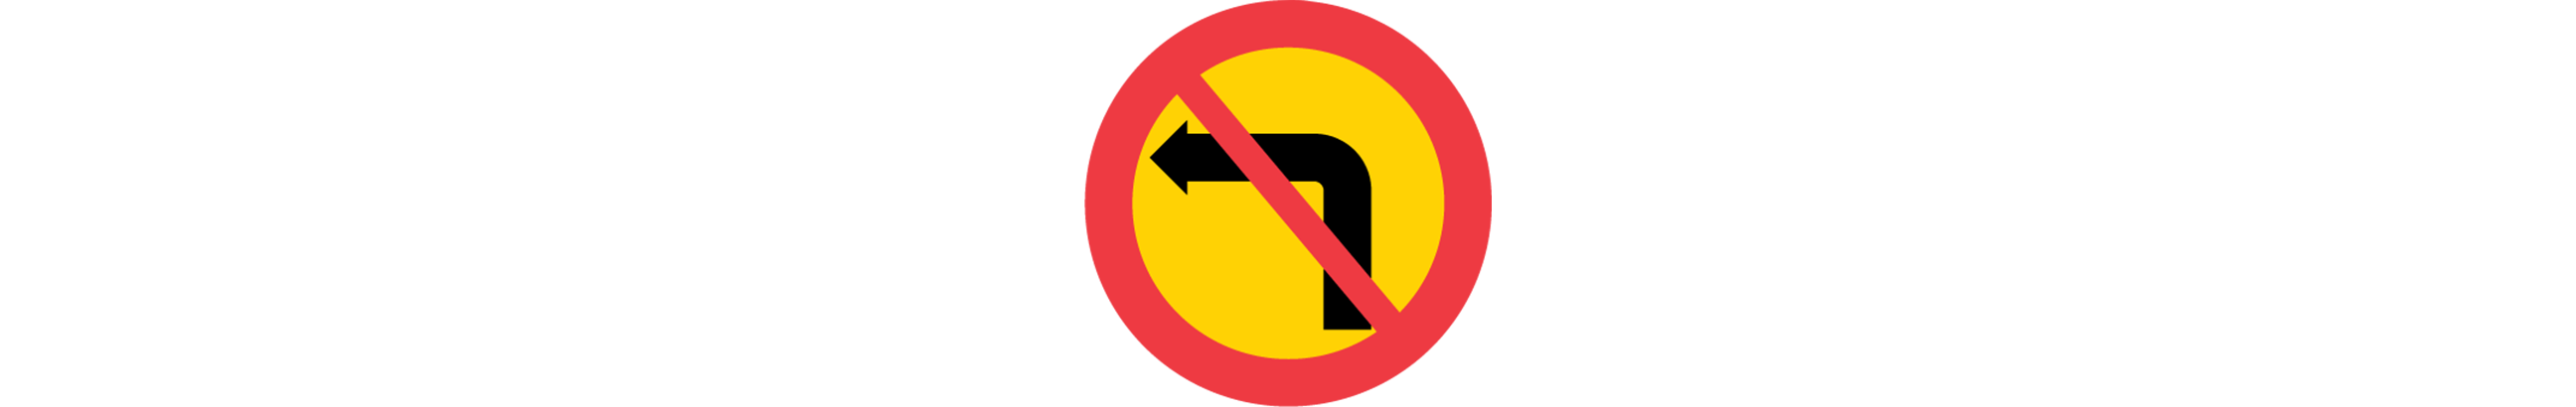 vägmärke för förbud mot sväng i korsning